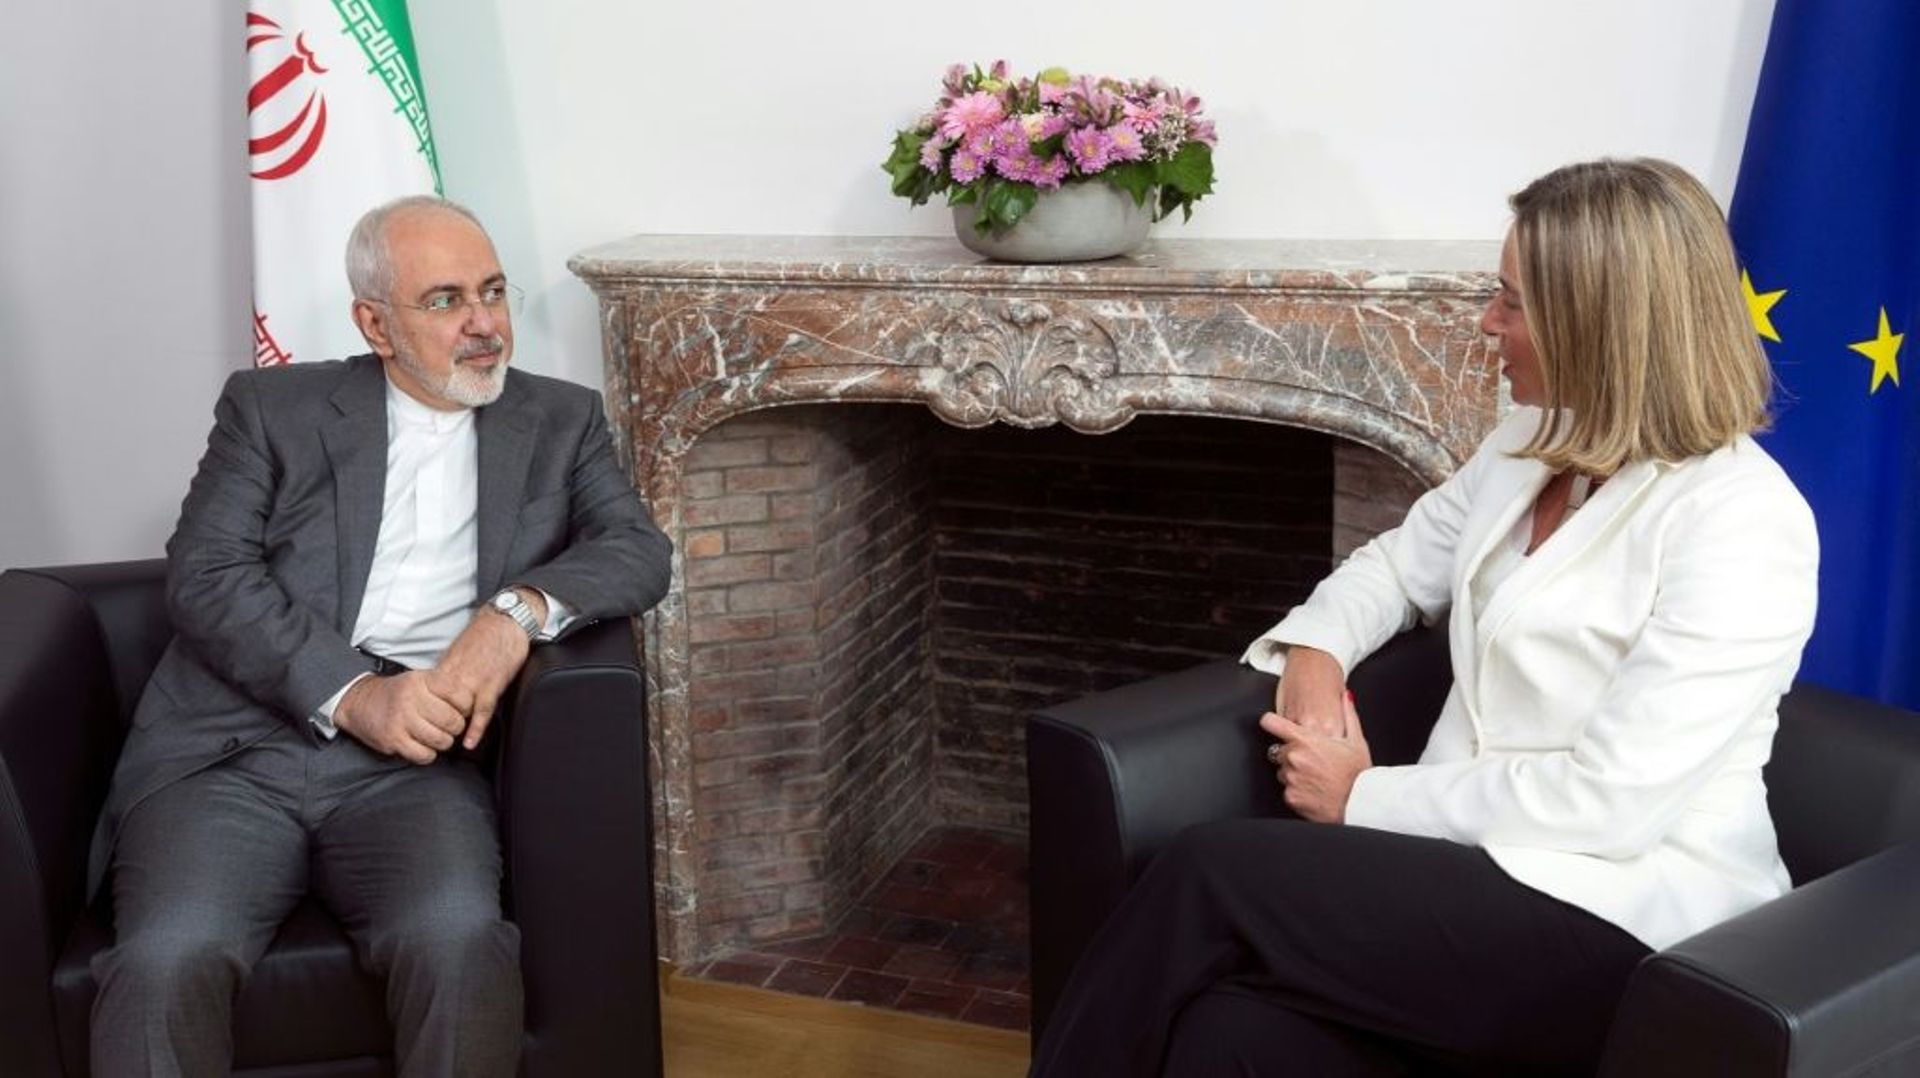 Le ministre des Affaires étrangères iranien Mohammad Javad Zarif lors de sa rencontre à Bruxelles le 15 mai 2018 avec Federica Mogherini, cheffe de la diplomatie européenne.